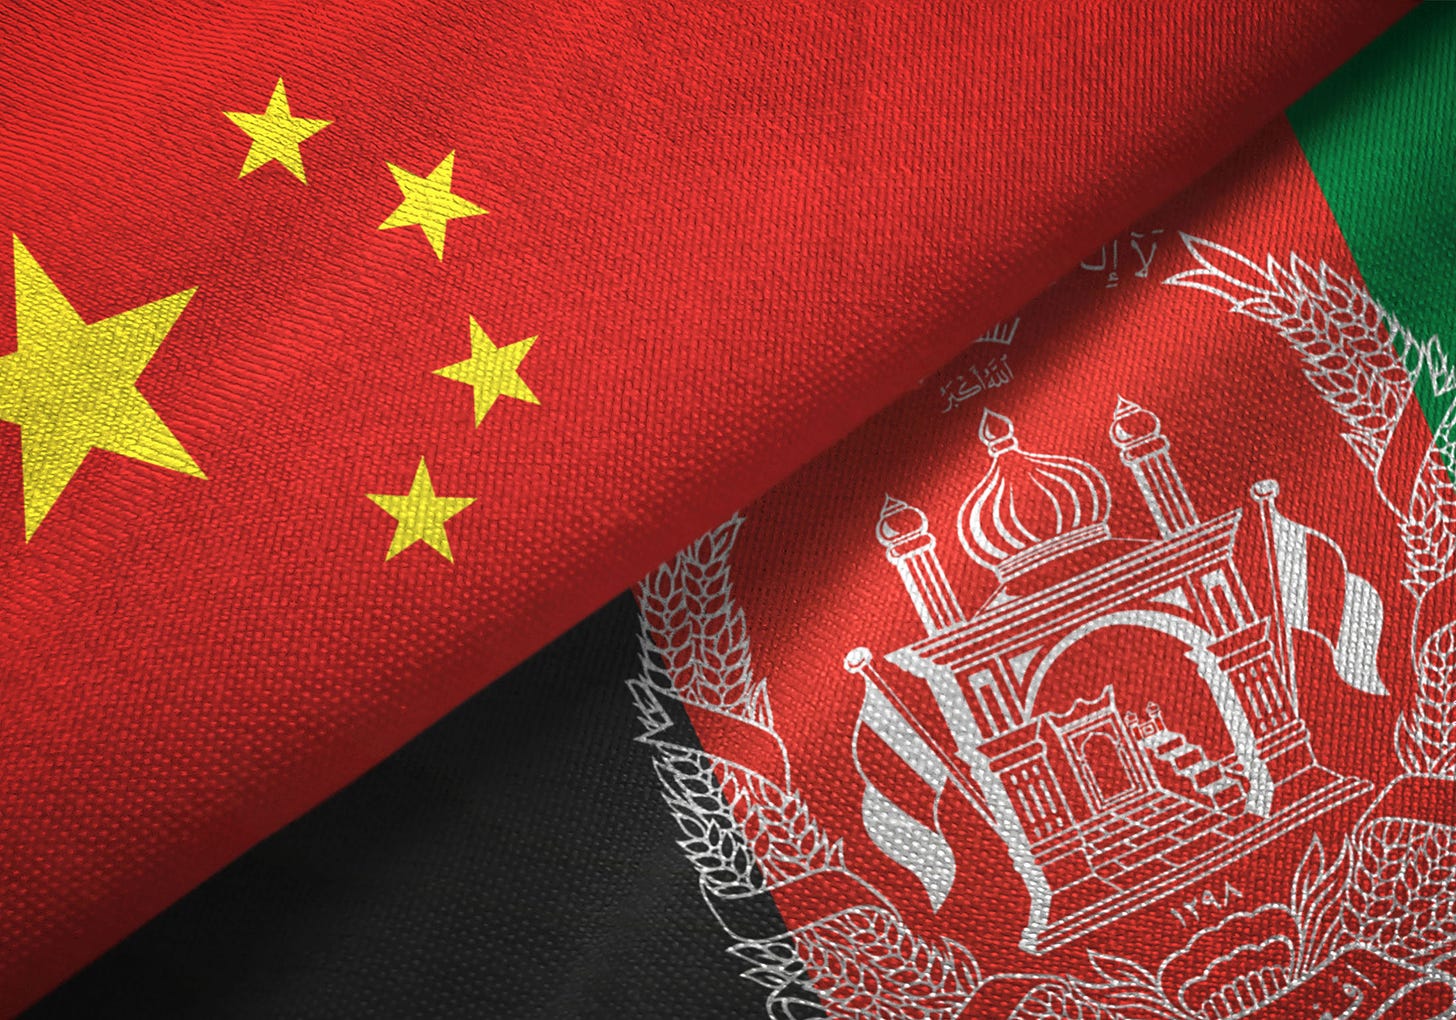 China Outmaneuvers Washington in Kabul